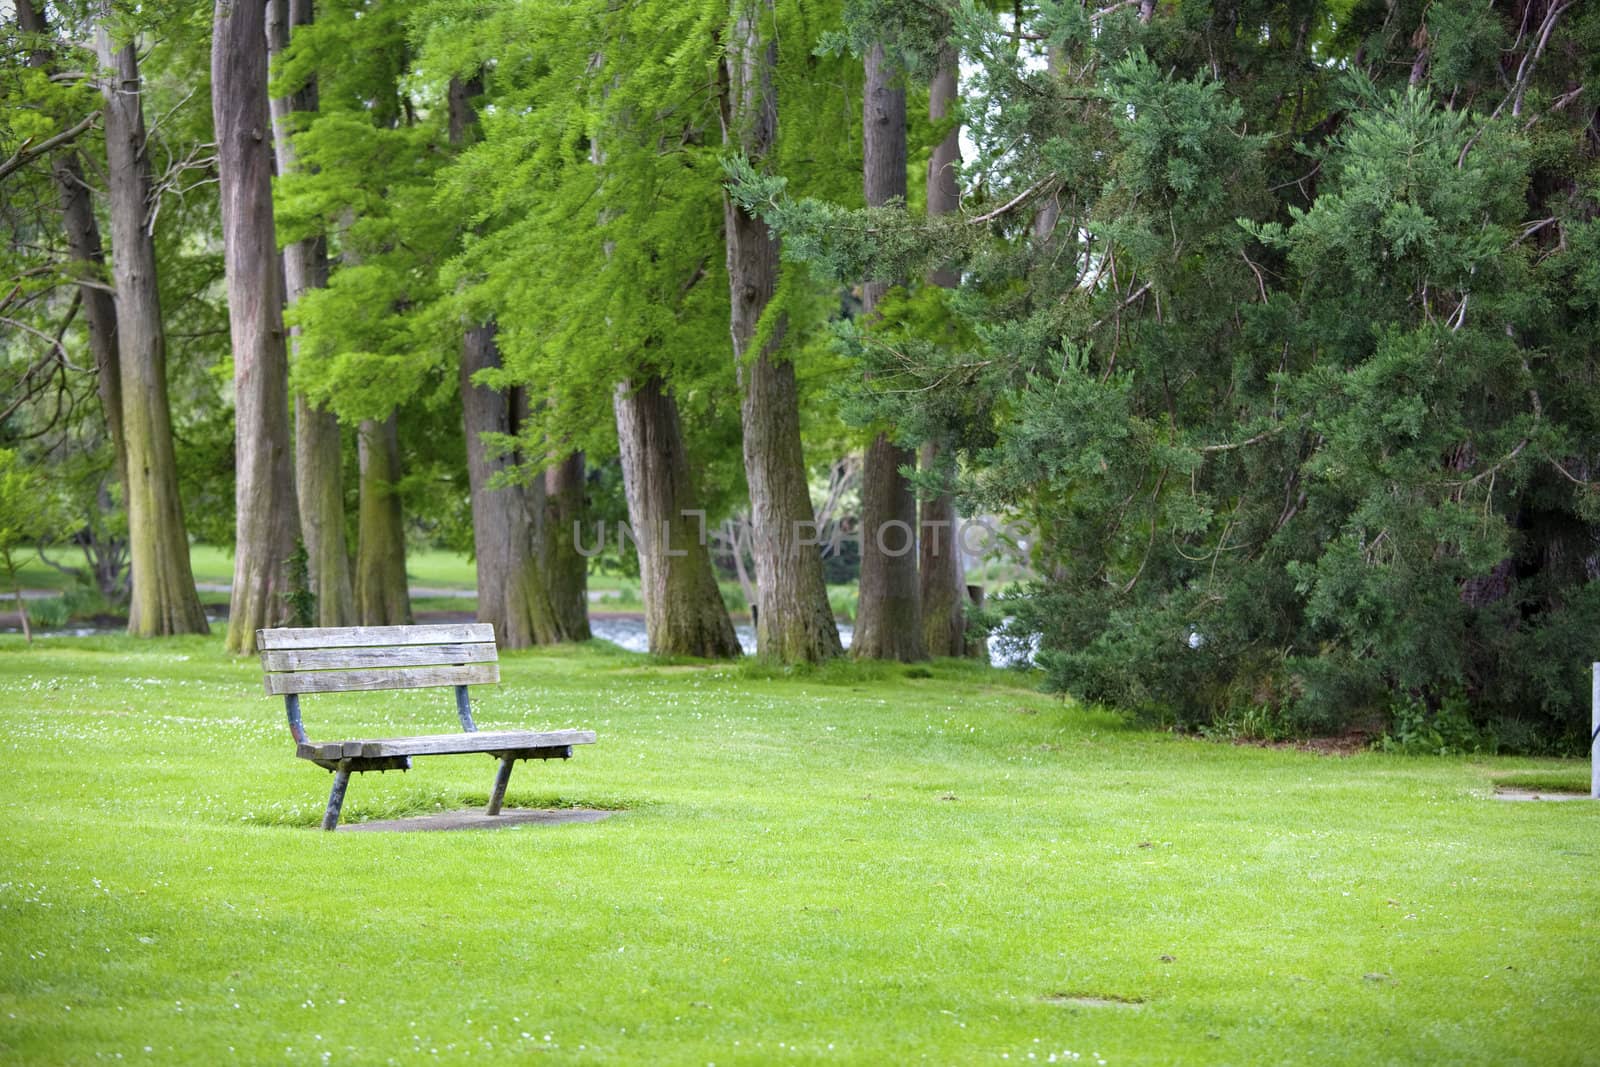 Quiet corner of lush green park with a bench by jarenwicklund